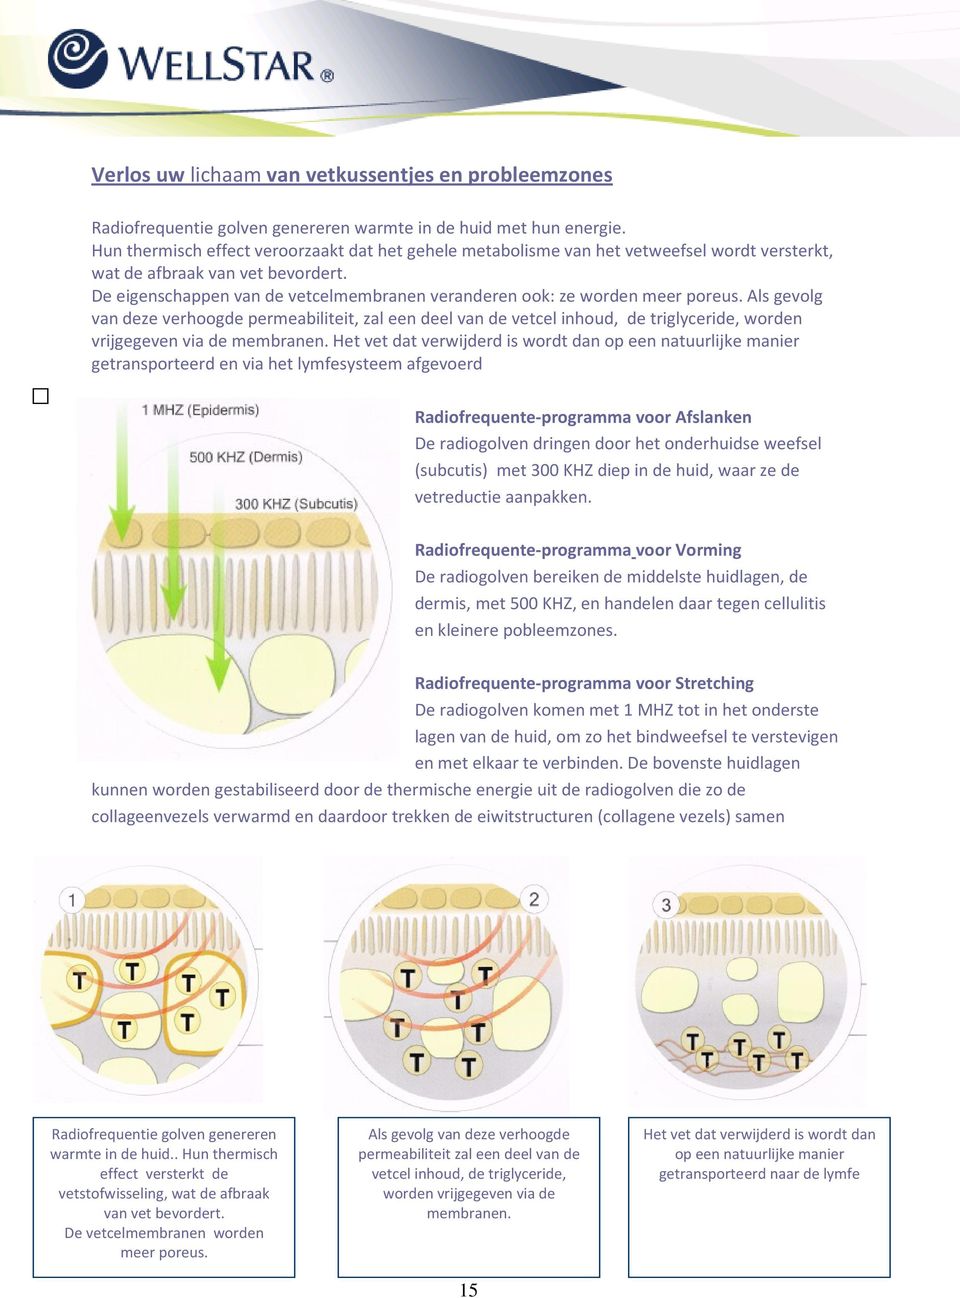 De eigenschappen van de vetcelmembranen veranderen ook: ze worden meer poreus.